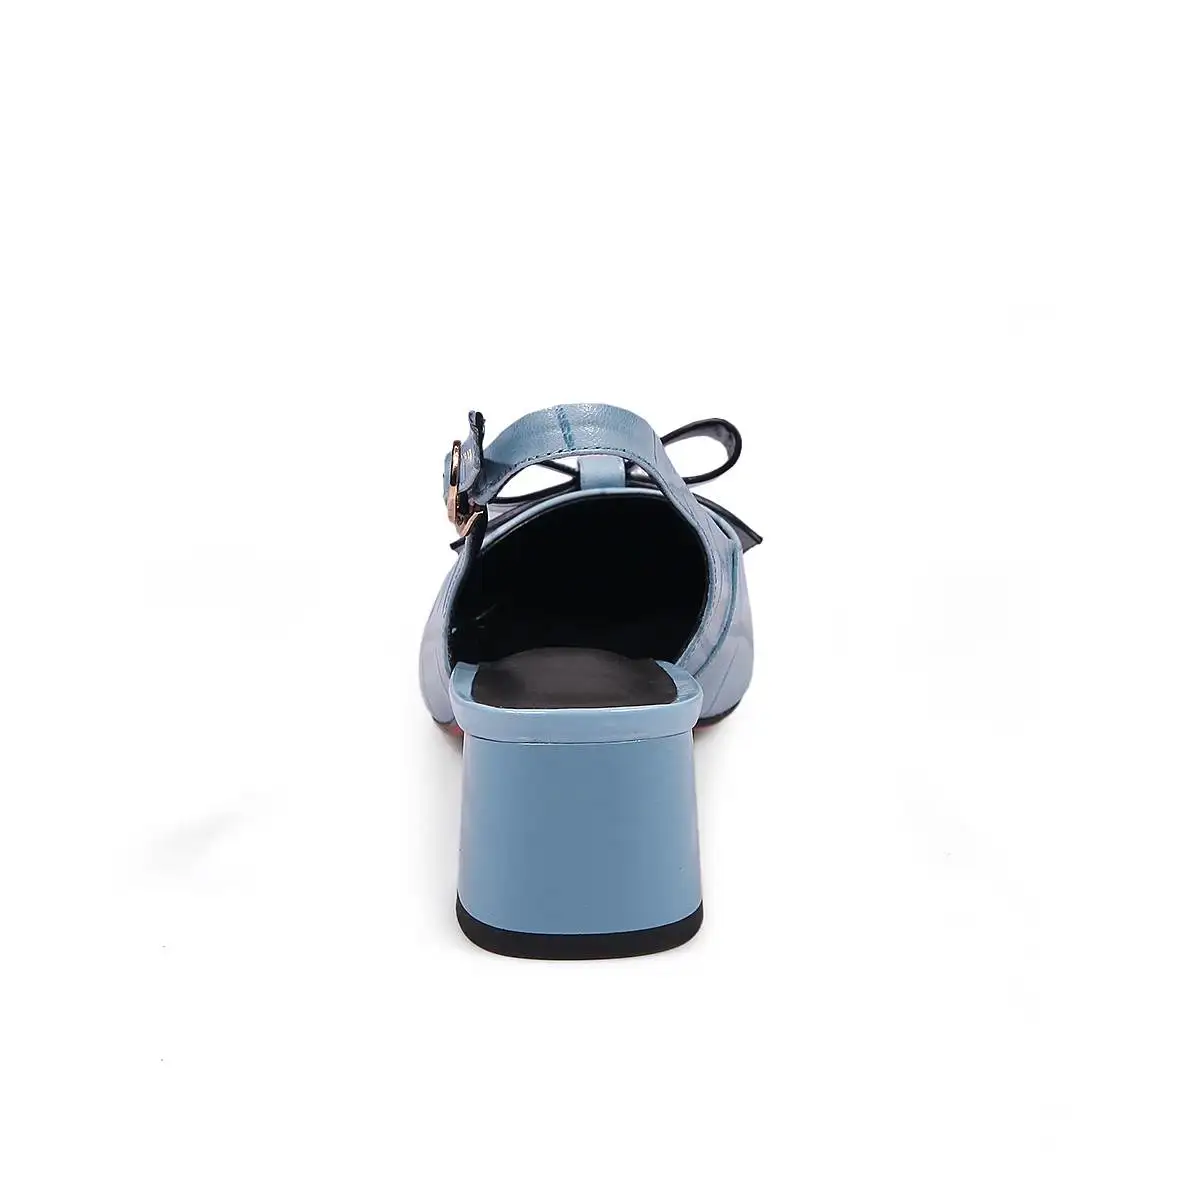 Krazing pot/женские туфли-лодочки из натуральной кожи на высоком каблуке с закрытым ремешком сзади Брендовые вечерние туфли с острым носком и бантом; L73